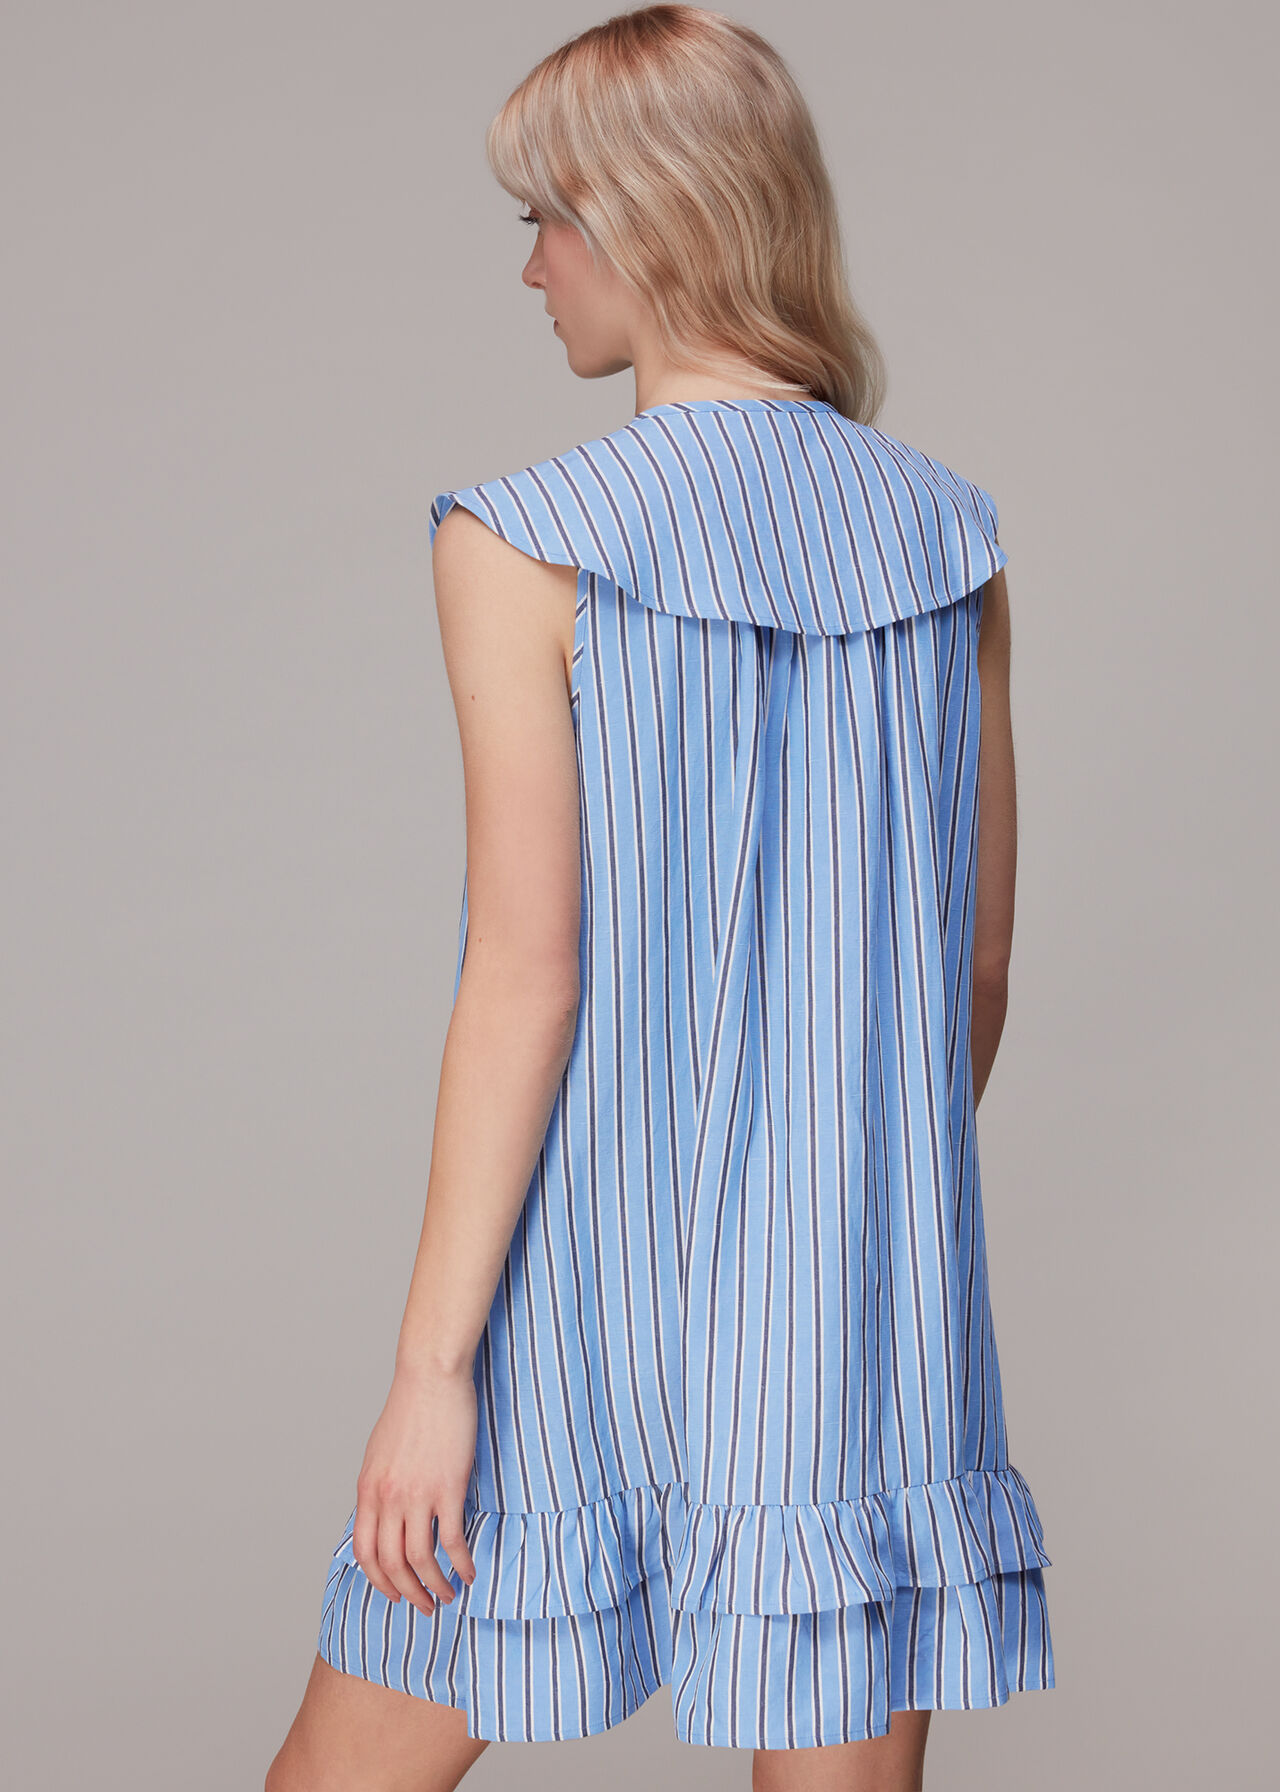 Stripe Collar Trapeze Dress